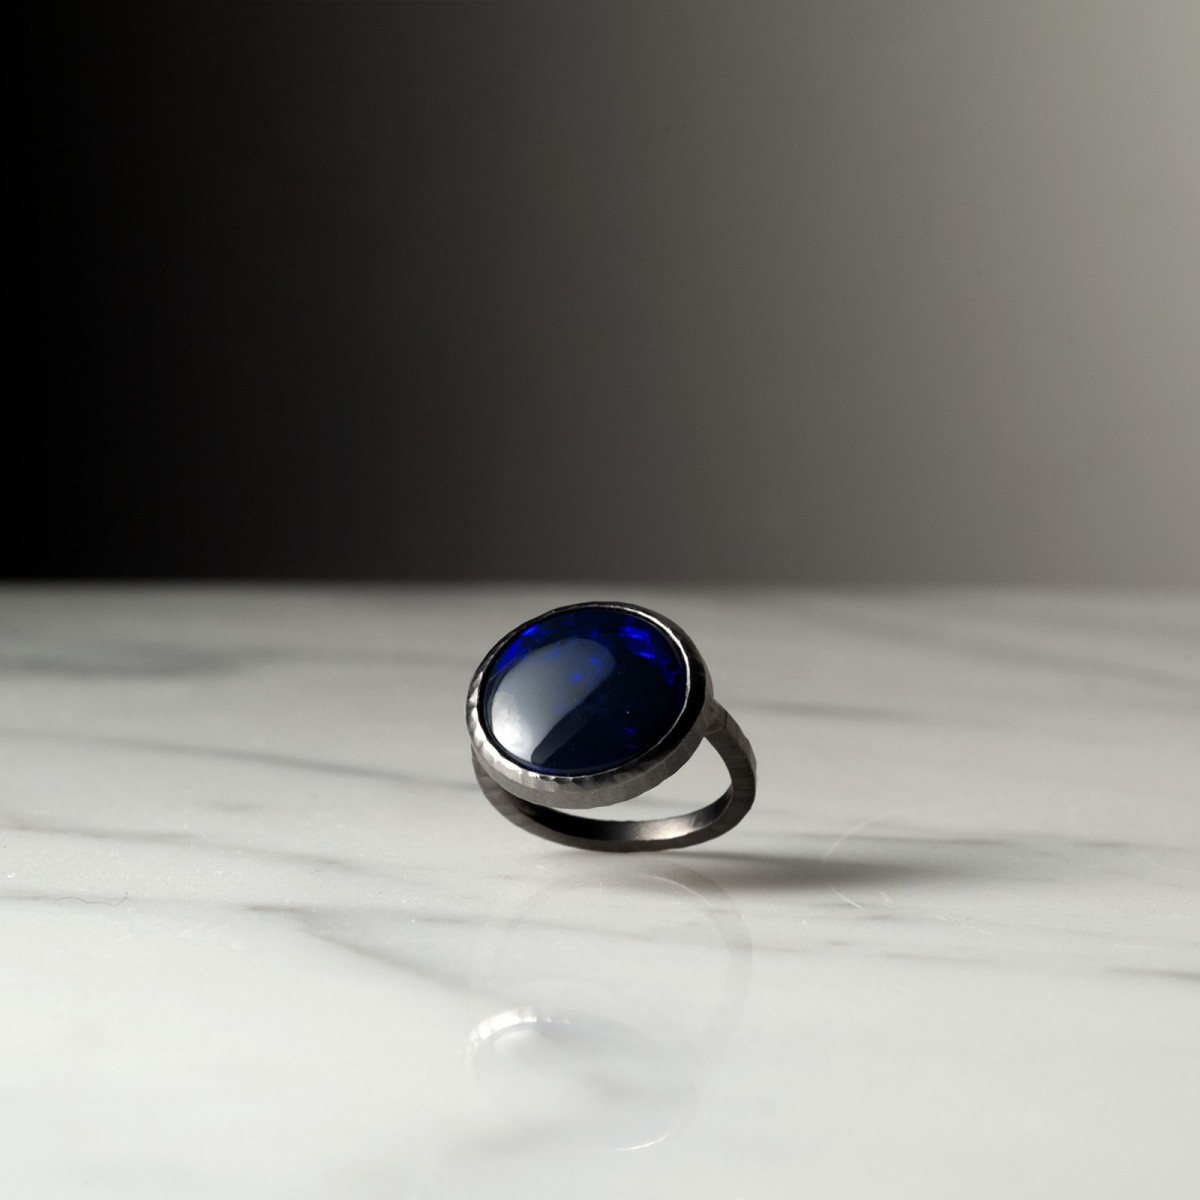 LAMIA 2179 - Handmade ring